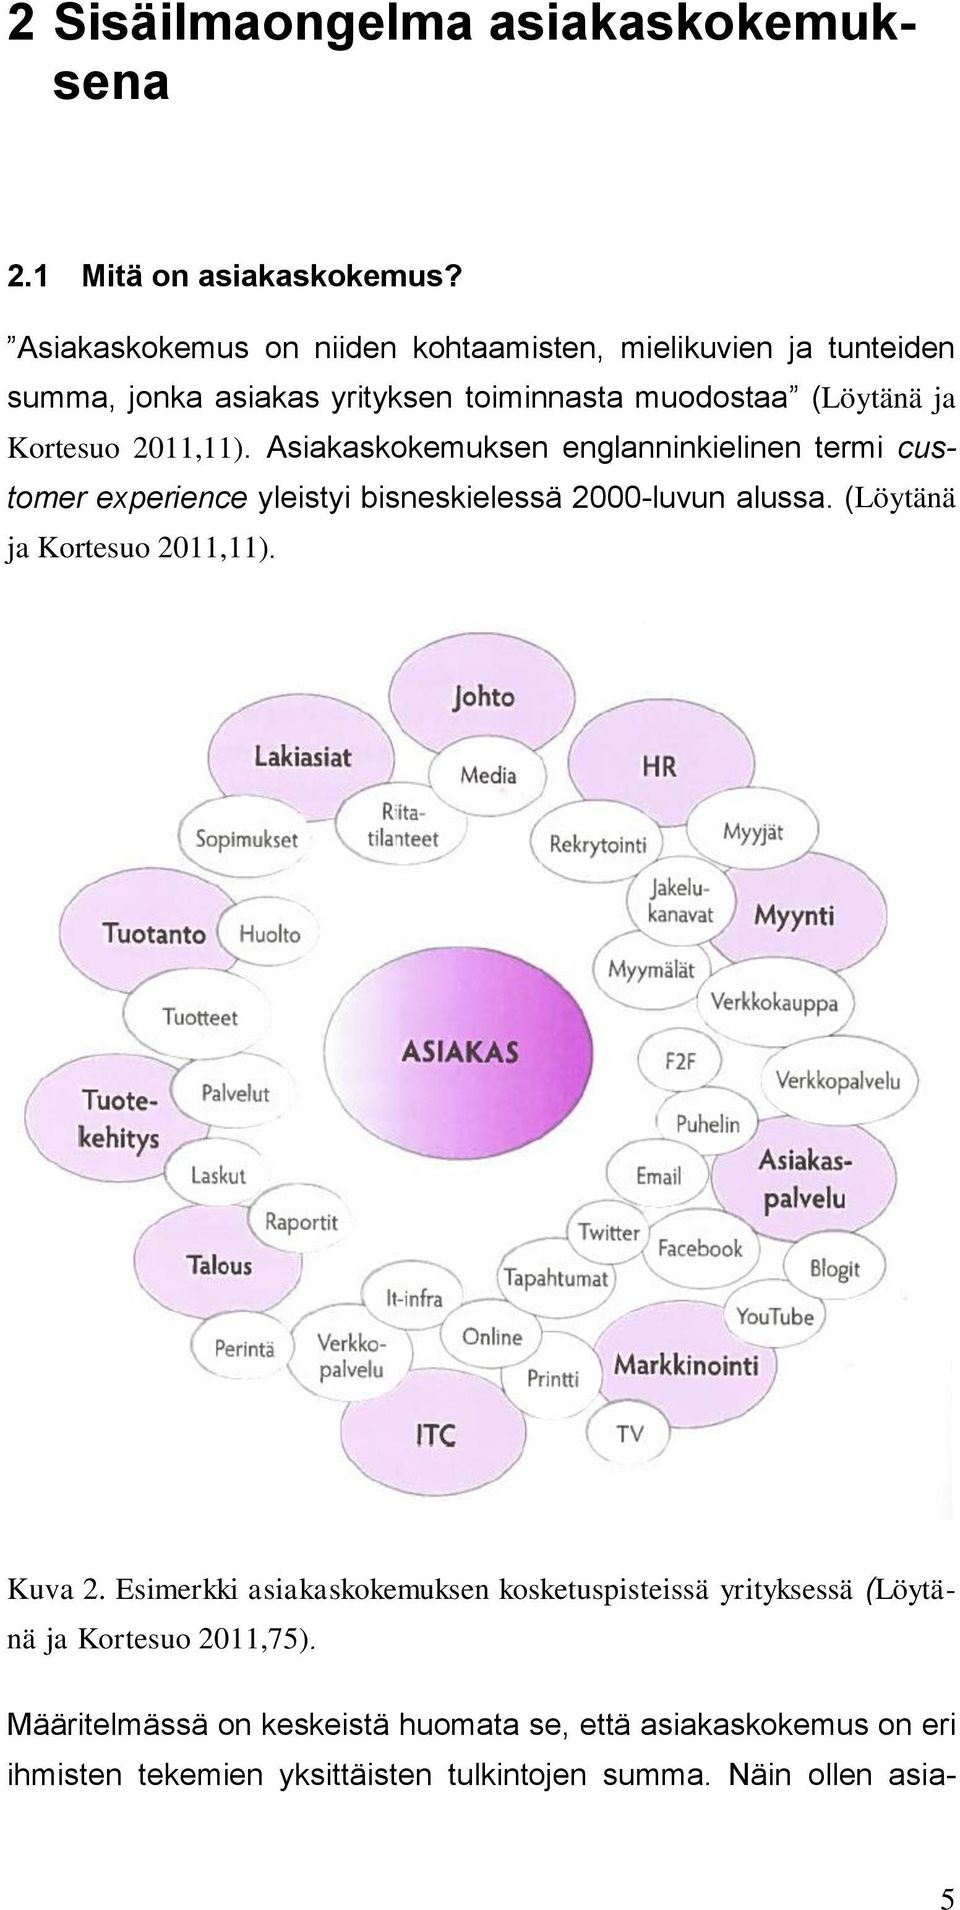 2011,11). Asiakaskokemuksen englanninkielinen termi customer experience yleistyi bisneskielessä 2000-luvun alussa. (Löytänä ja Kortesuo 2011,11).